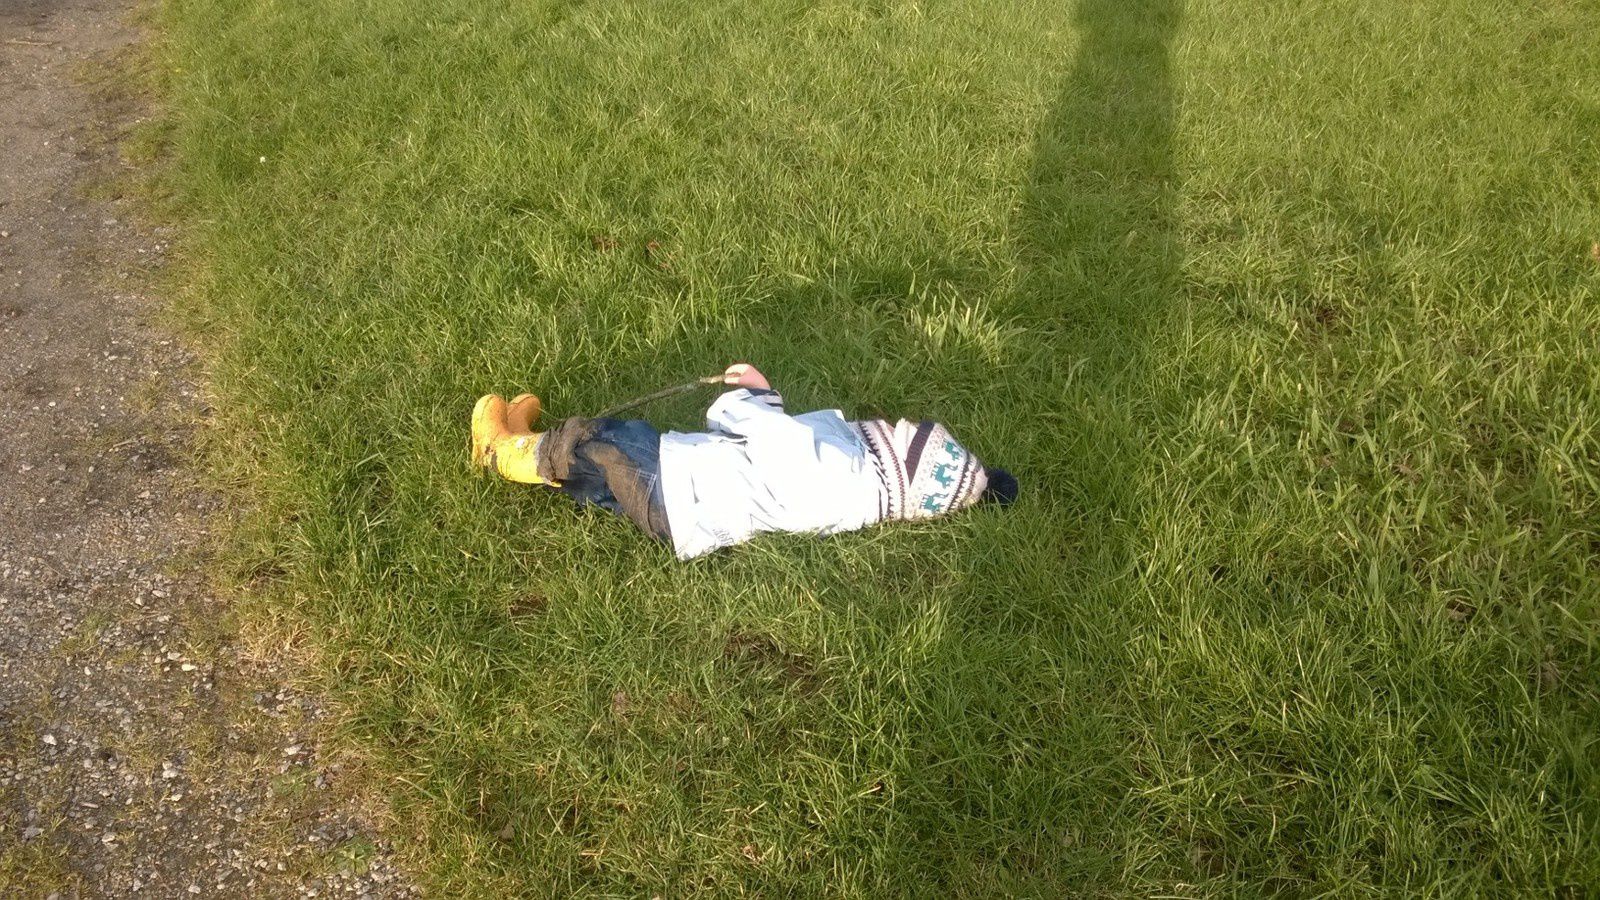 Vivement l'été pour pouvoir faire des siestes dans l'herbe!